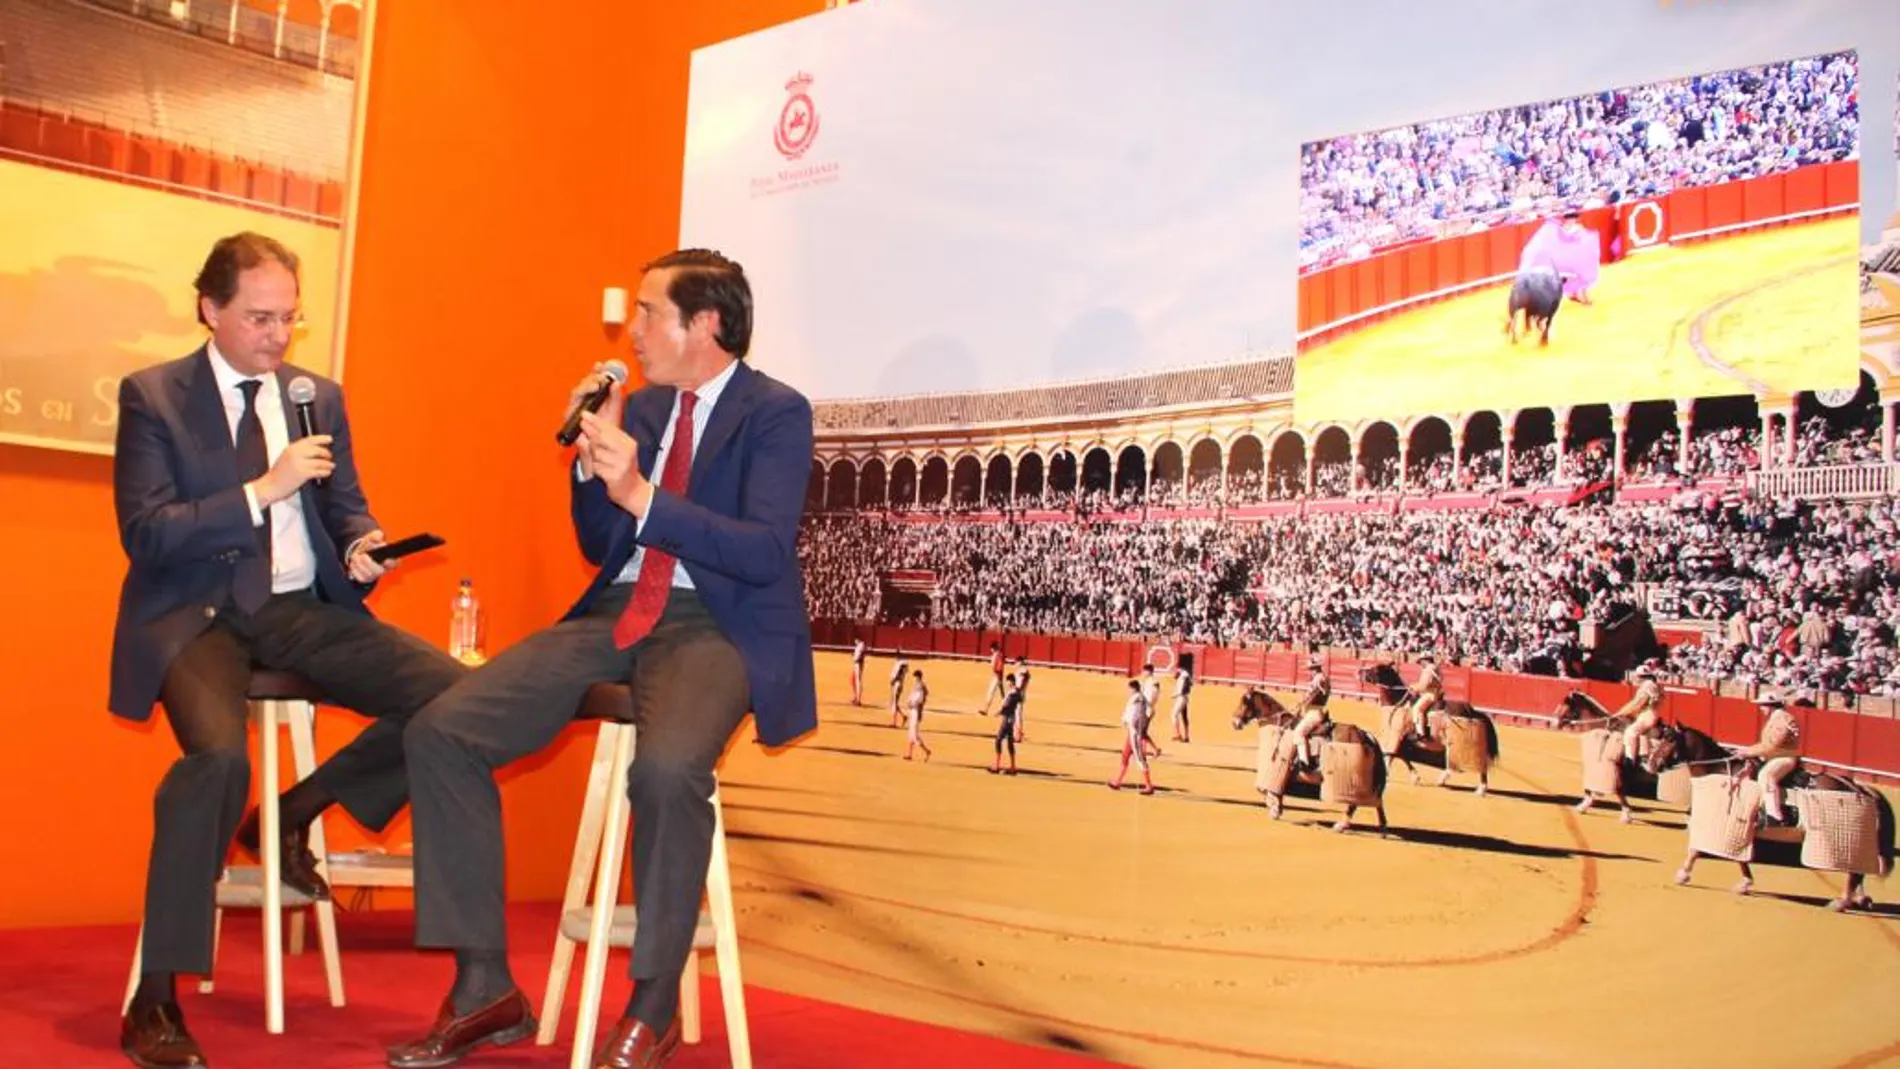 José Enrique Moreno y Dávila Miura visualizan imágenes de la última actuación del diestro en Sevilla